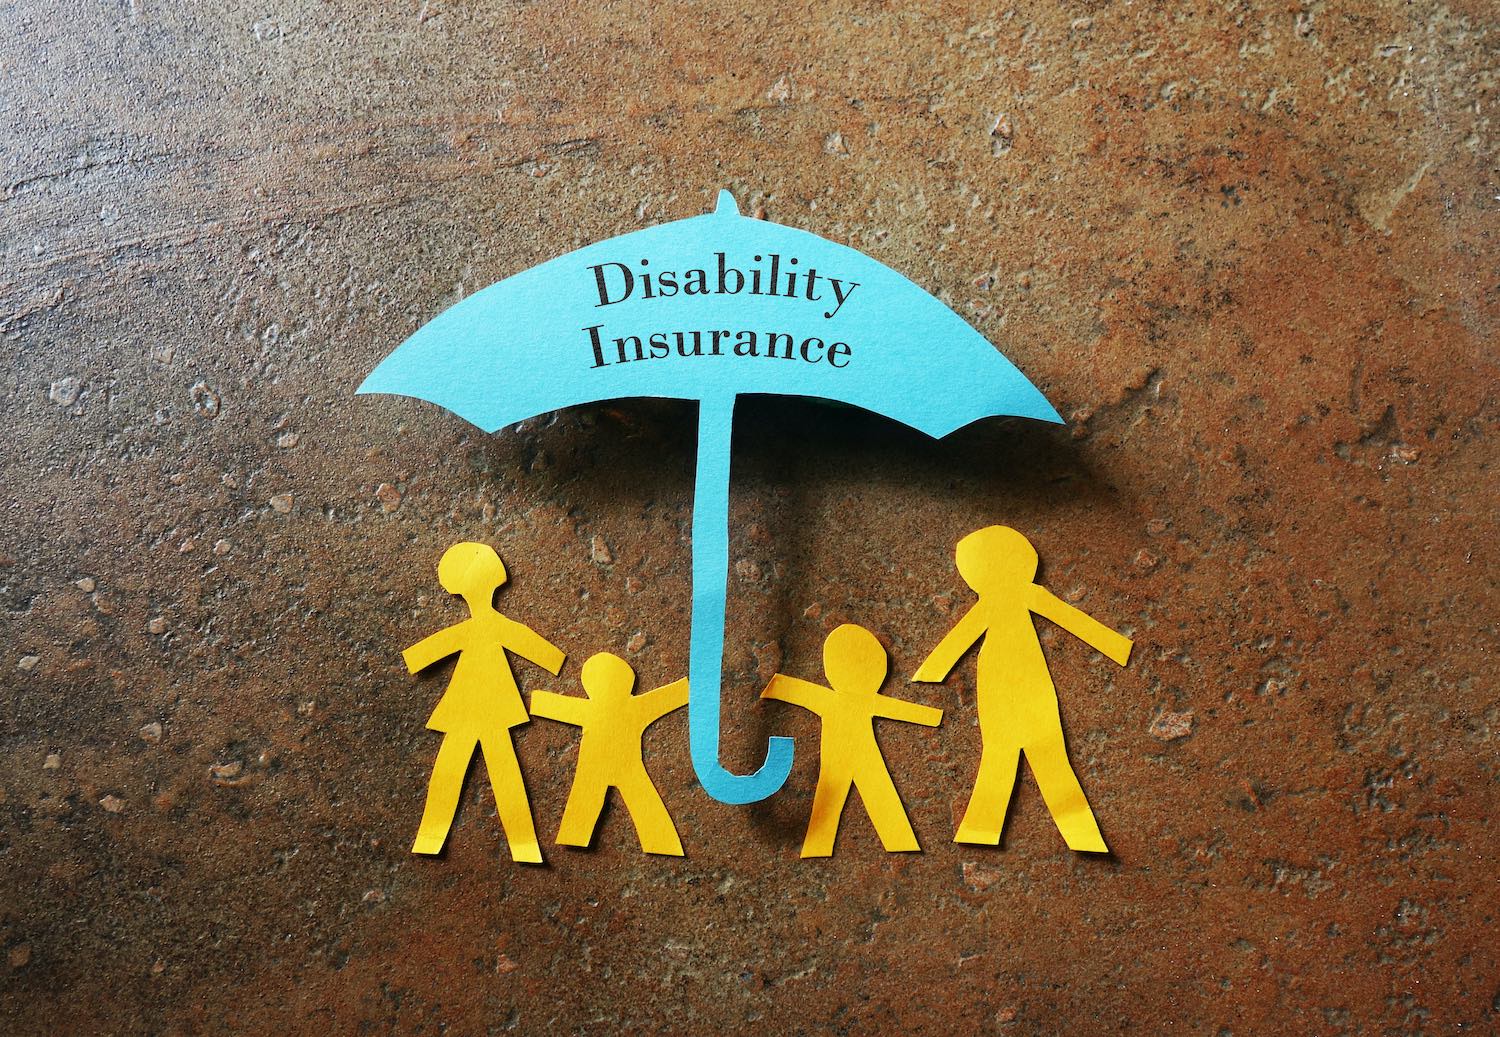 Do I need disability insurance?